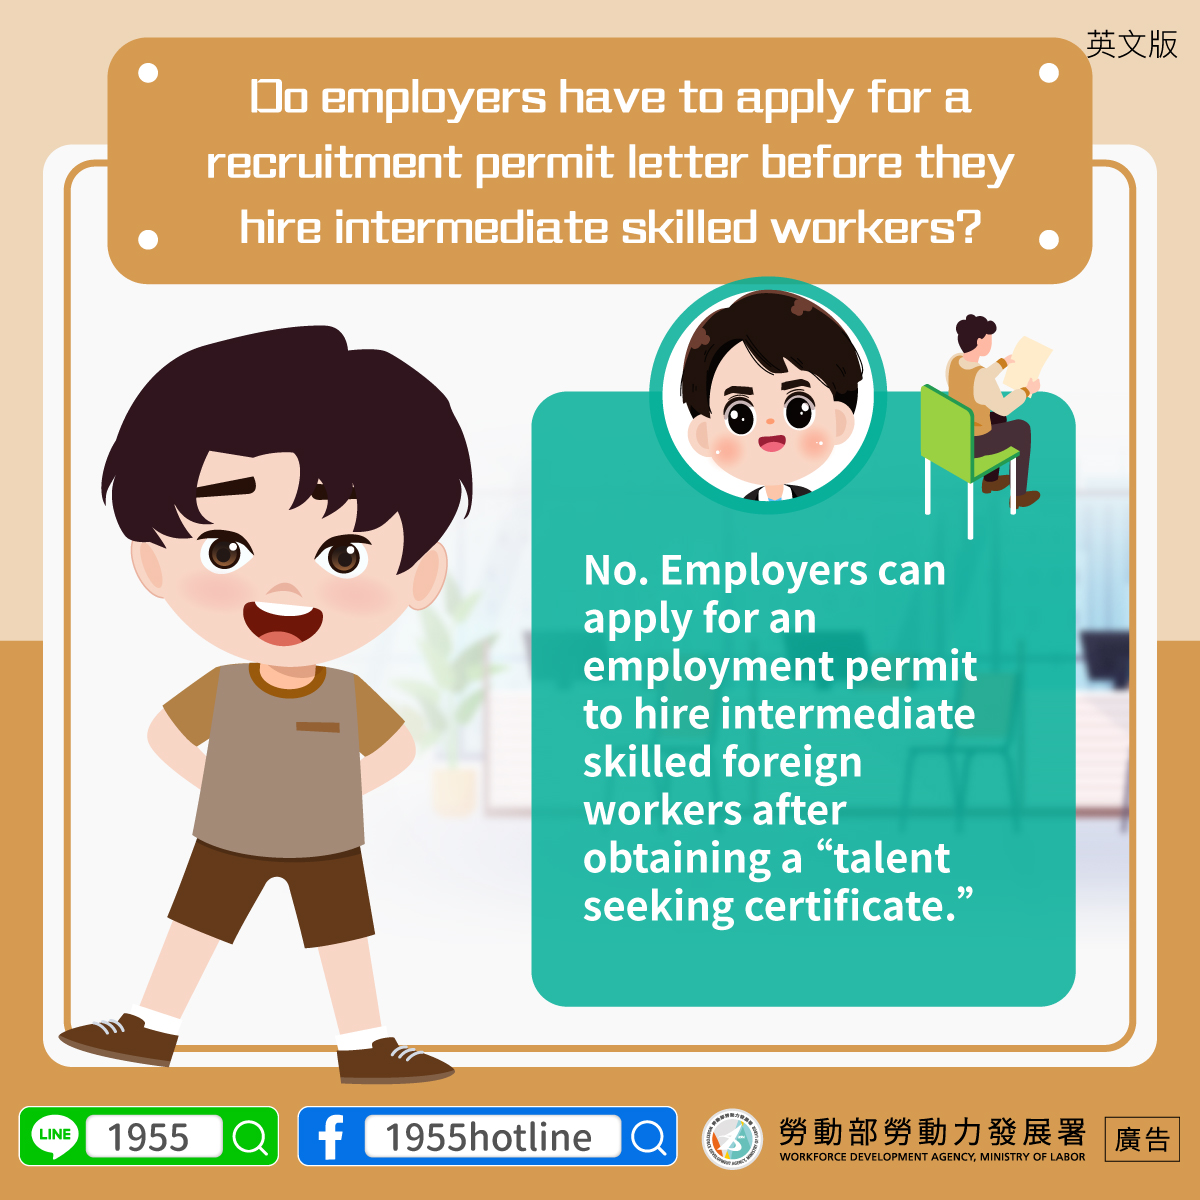 12_雇主聘僱中階技術人力，是否需先申請招募許可？_英.jpg